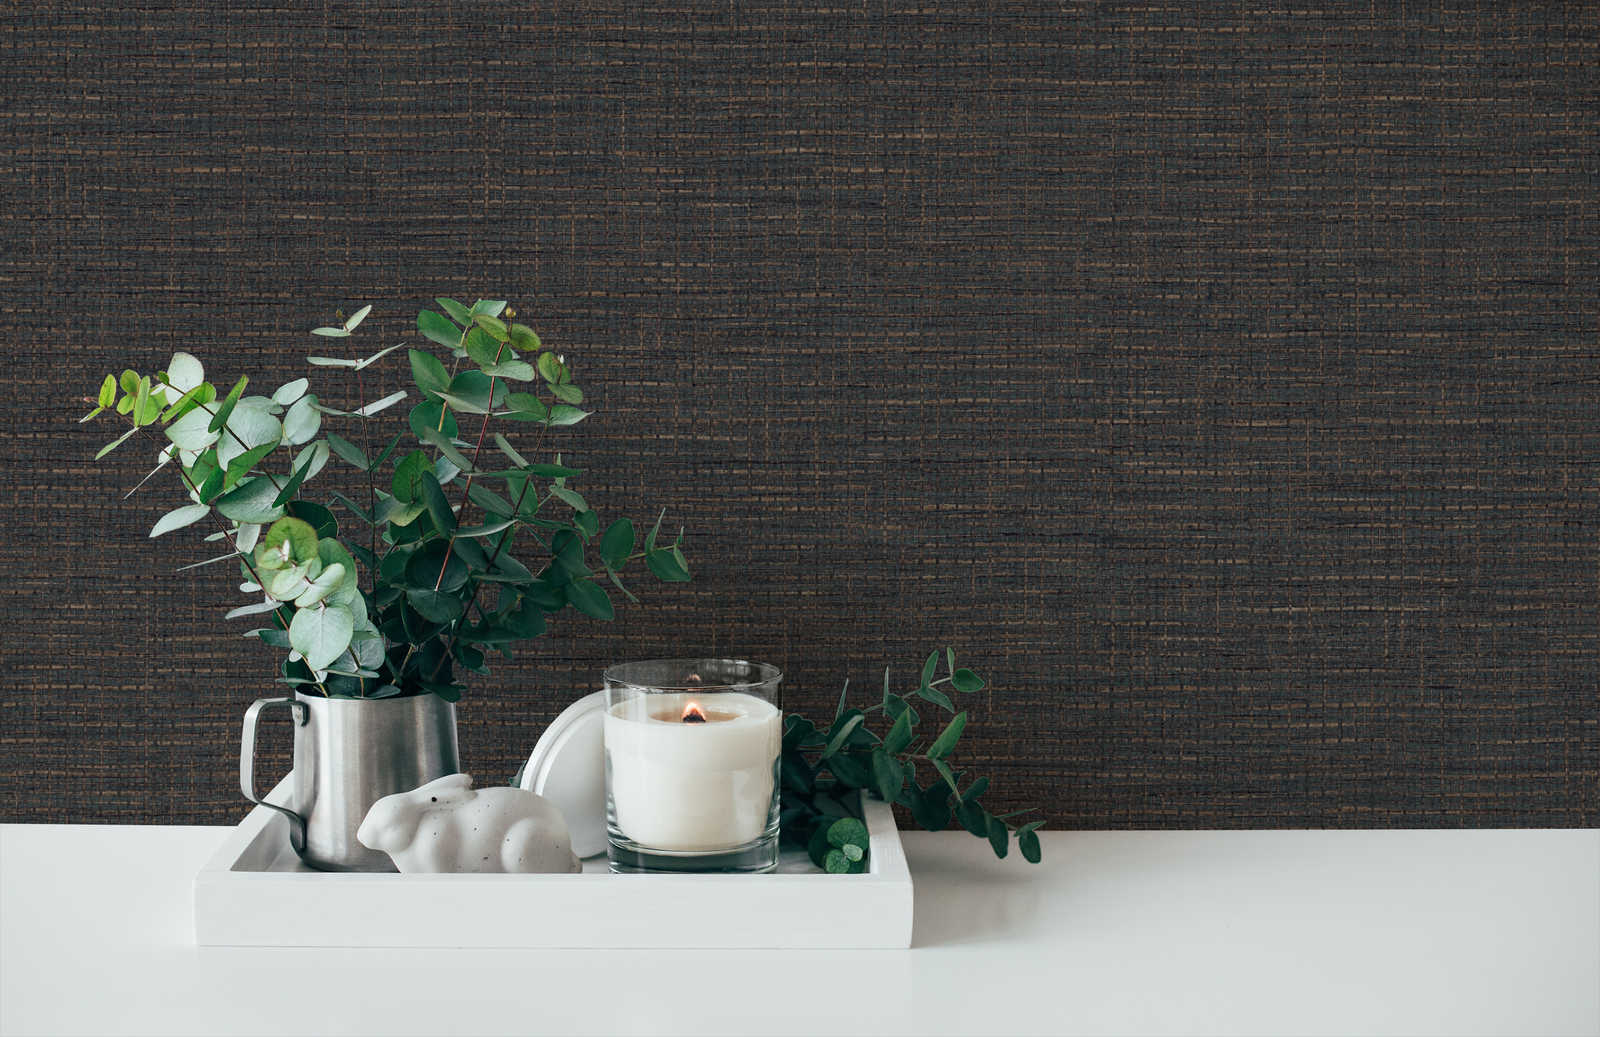             Dark brown wallpaper with raffia pattern, matt & textured
        